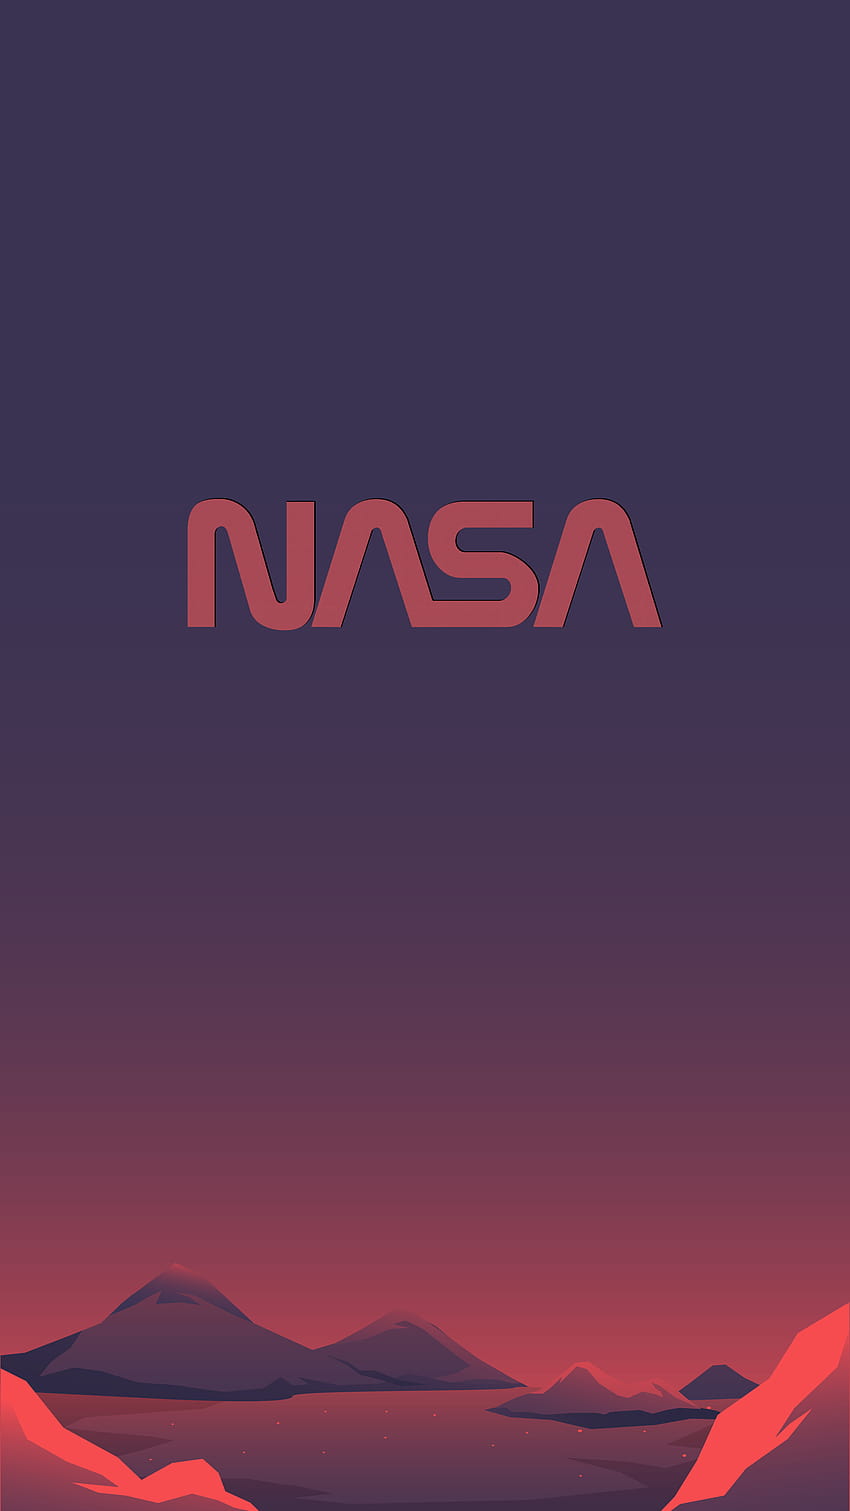 MARS NASA SPACEX UNTUK PONSEL wallpaper ponsel HD